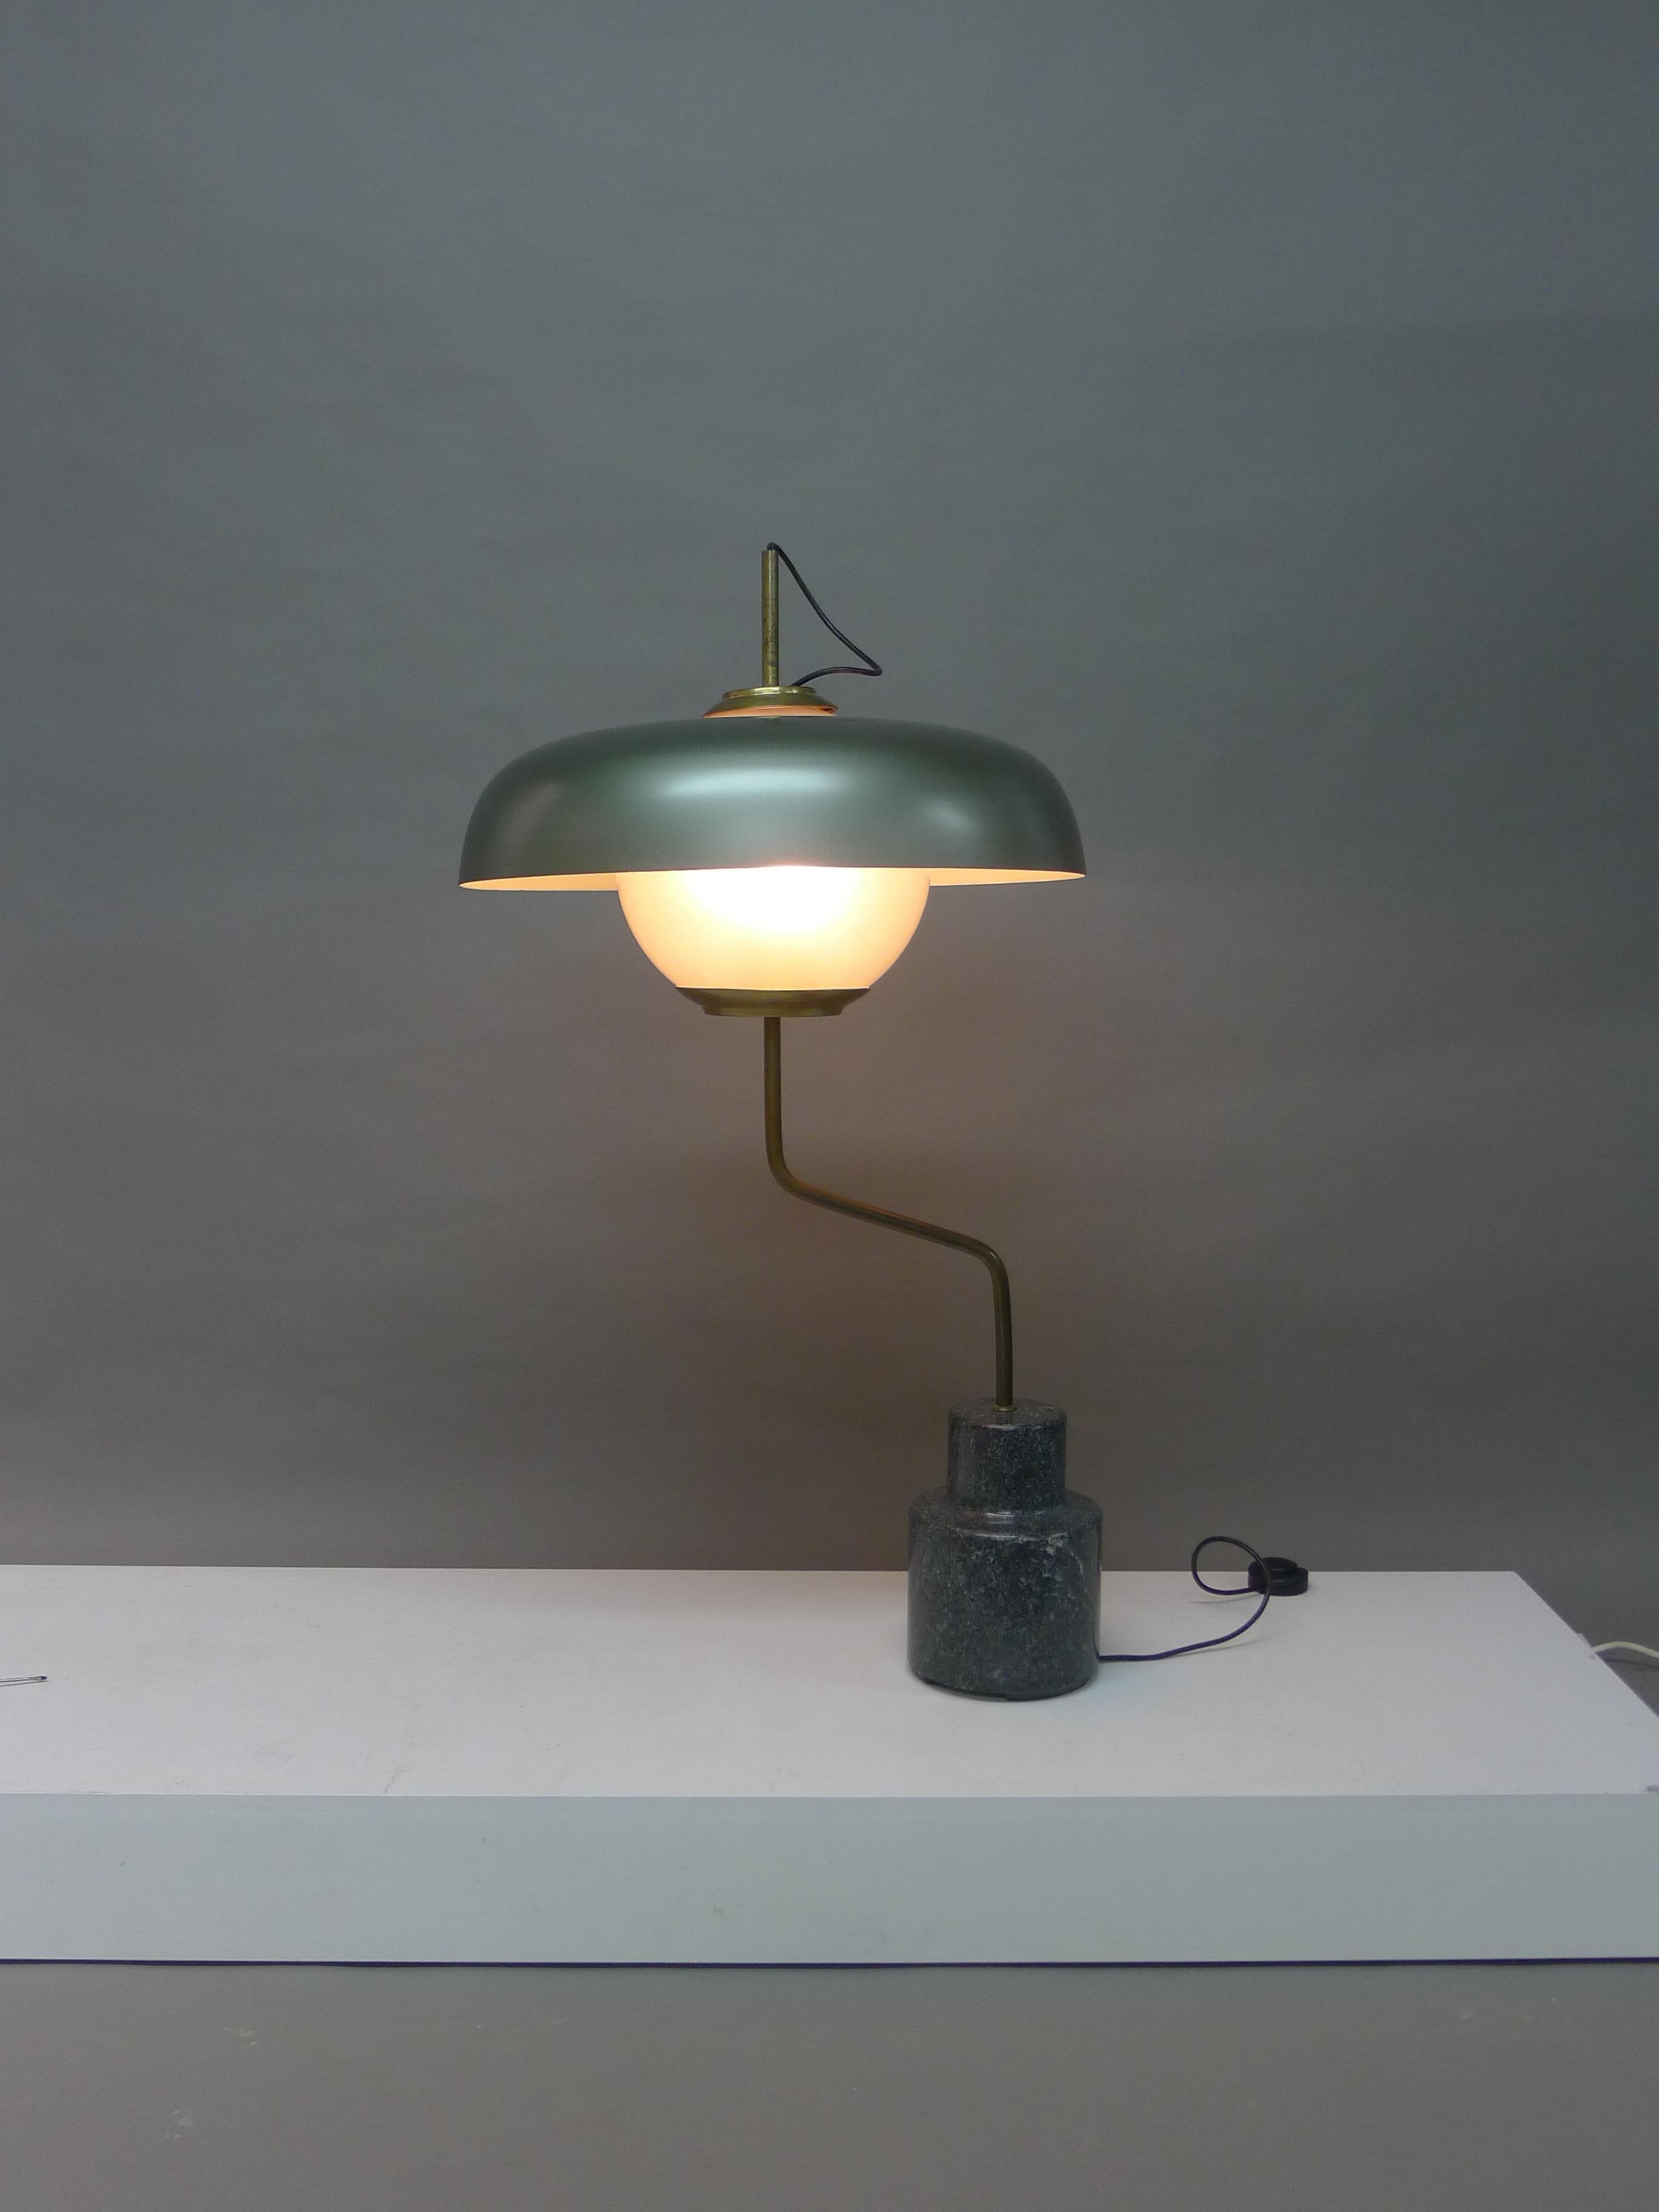 Luigi Caccia Dominioni pour Azucena, Italie, 1963. Un modèle de lampe de table Lte 5 connu sous le nom de 